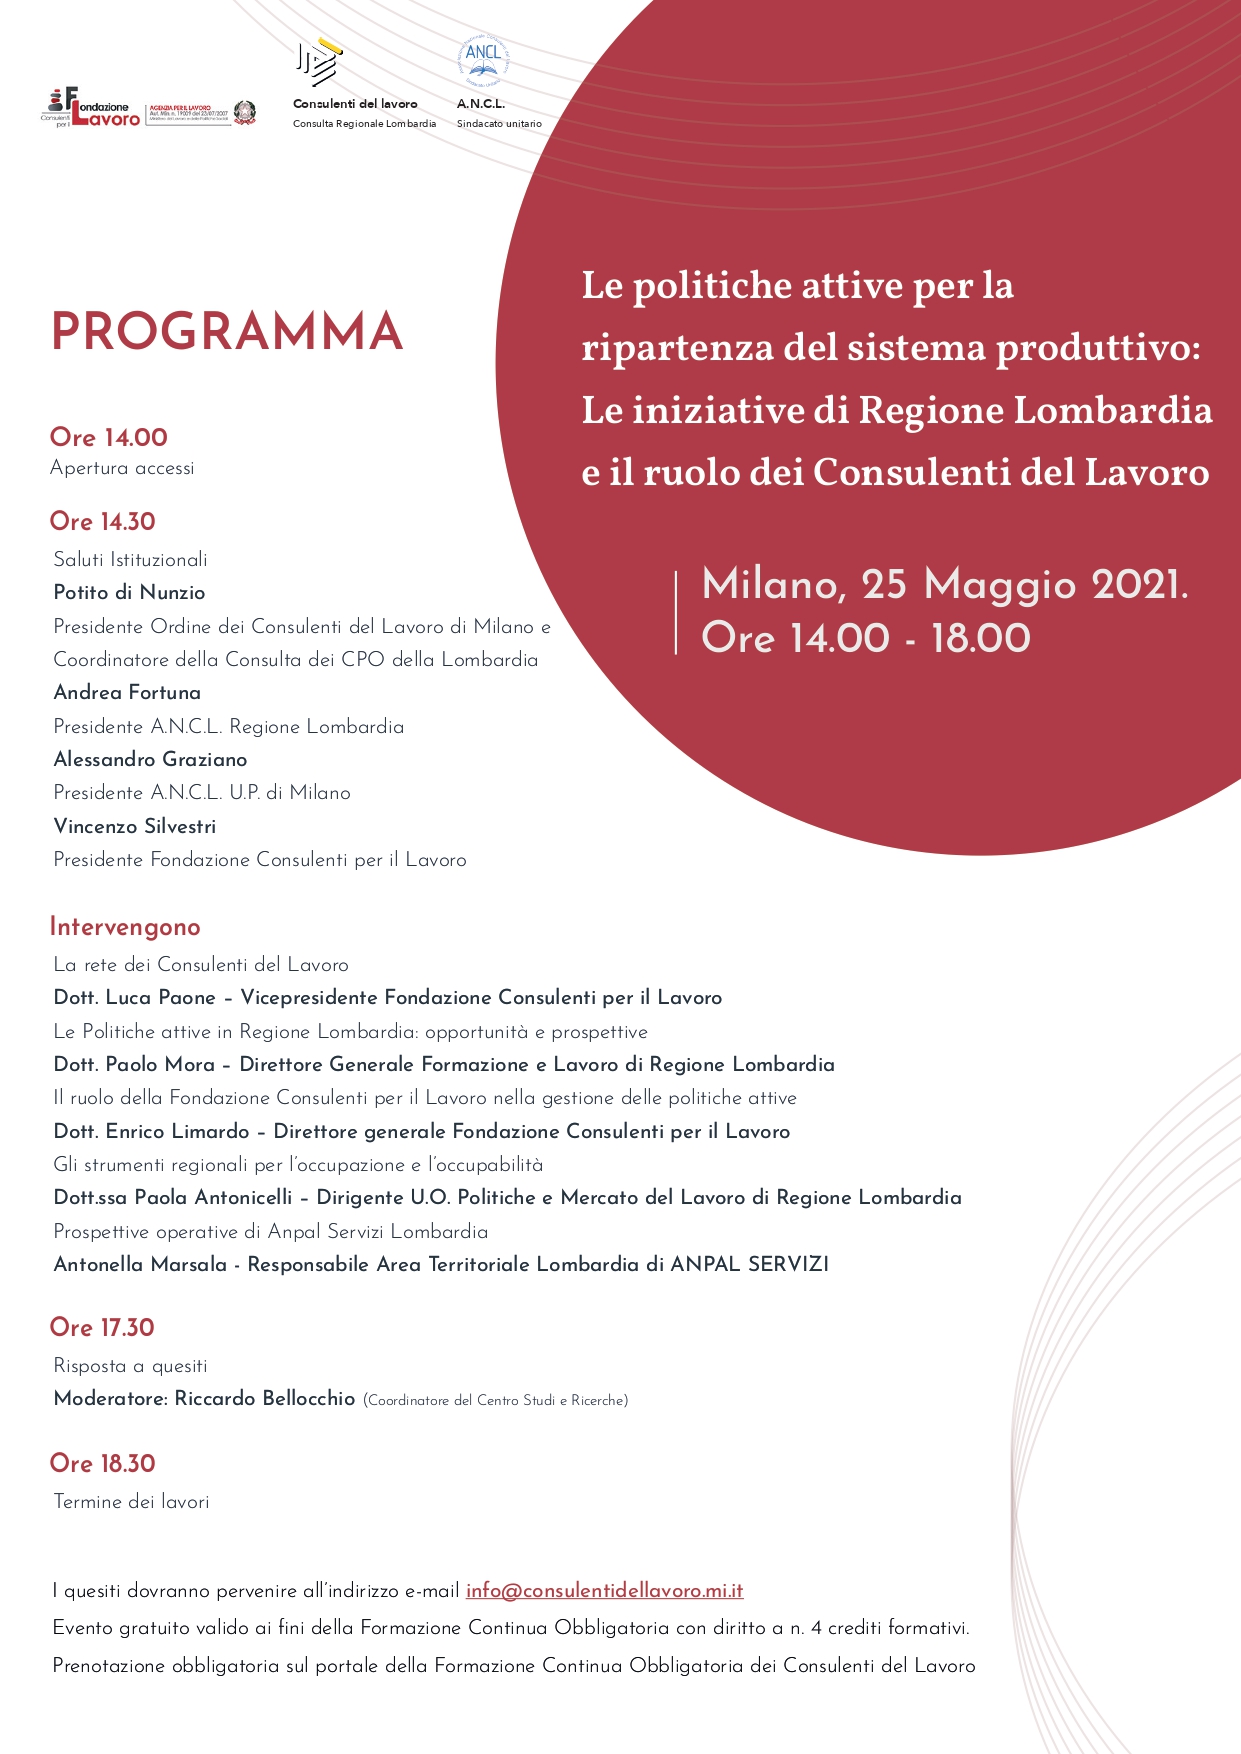 Le politiche attive per la ripartenza del sistema produttivo Le iniziative di Regione Lombardia e il ruolo dei Consulenti del Lavoro